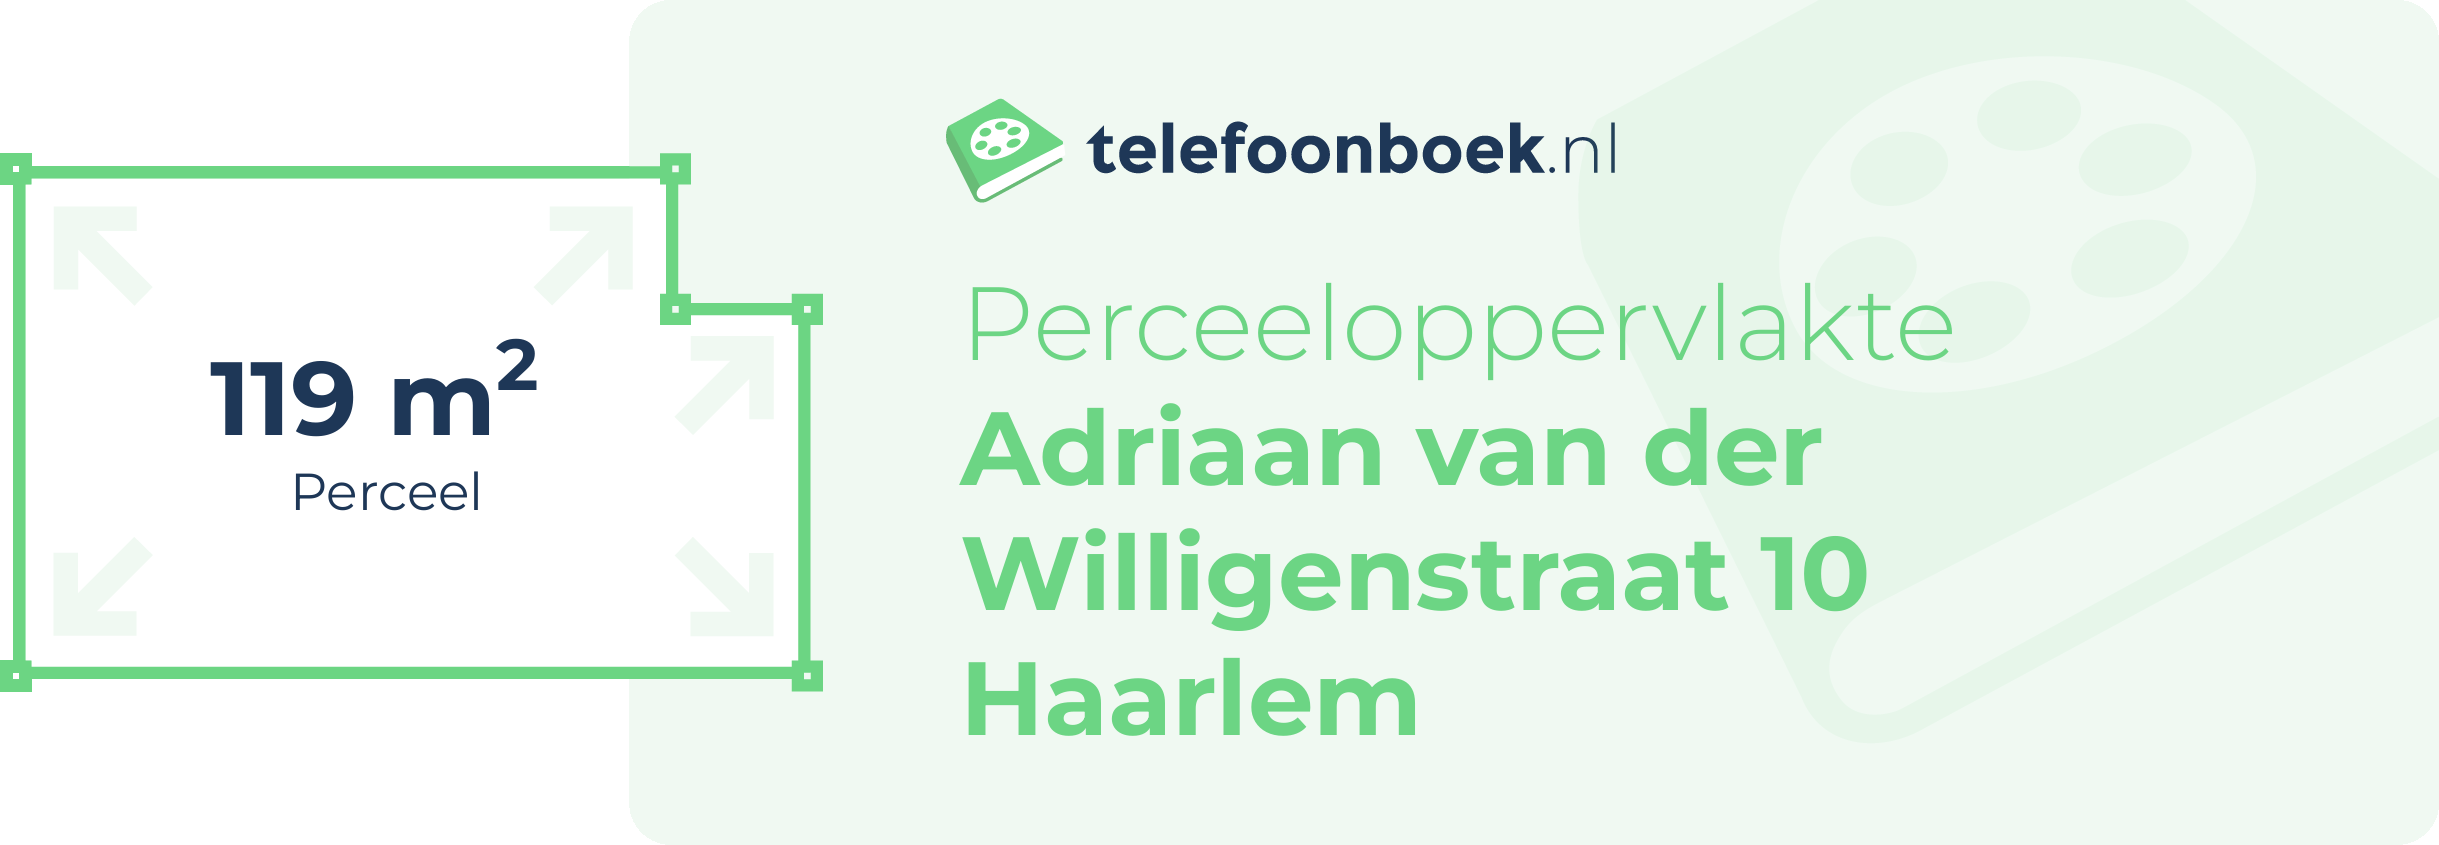 Perceeloppervlakte Adriaan Van Der Willigenstraat 10 Haarlem